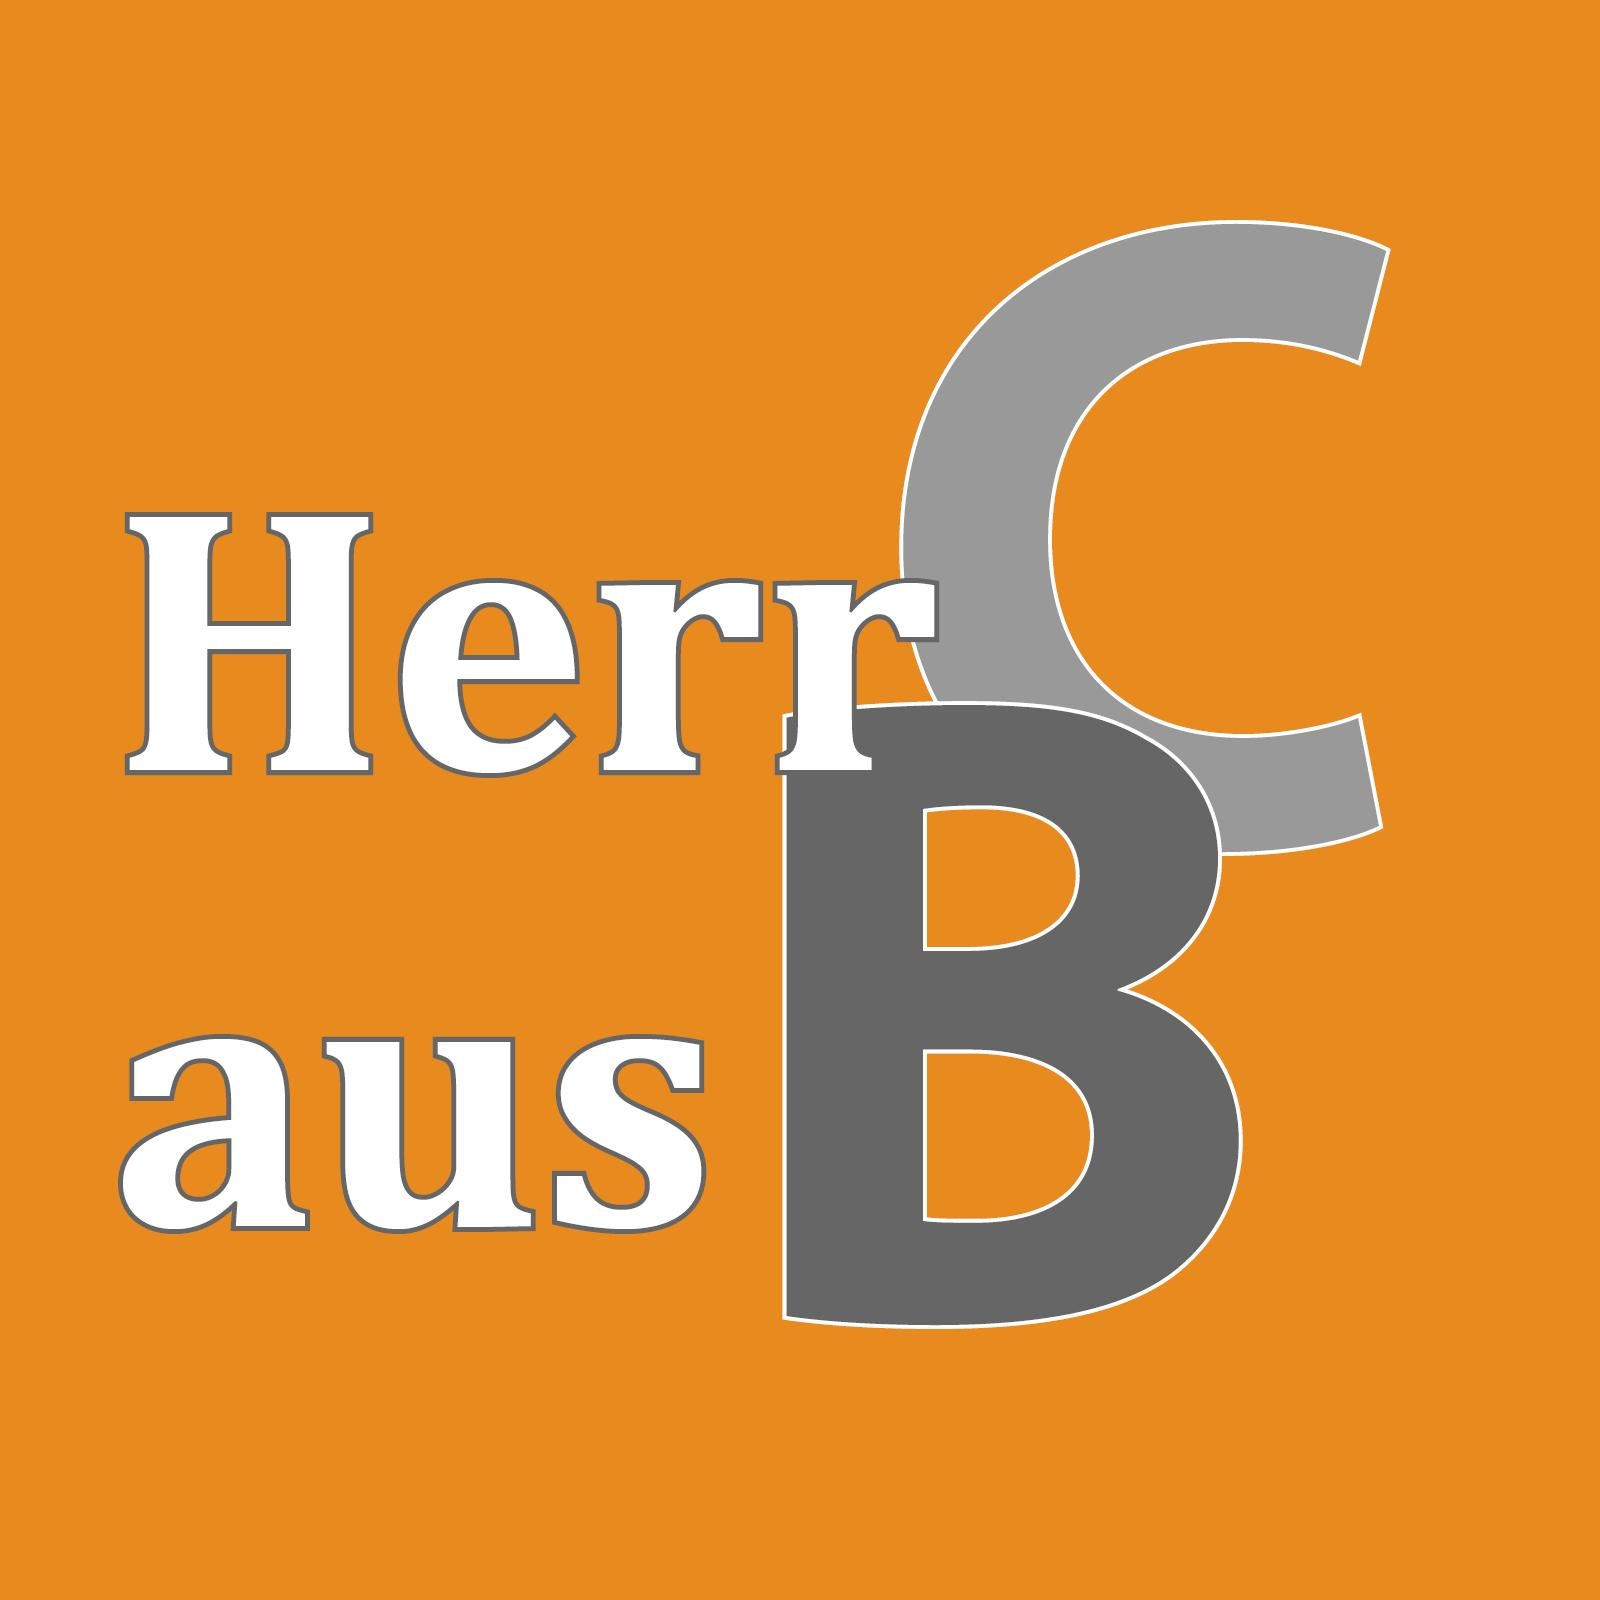 HerrCausB